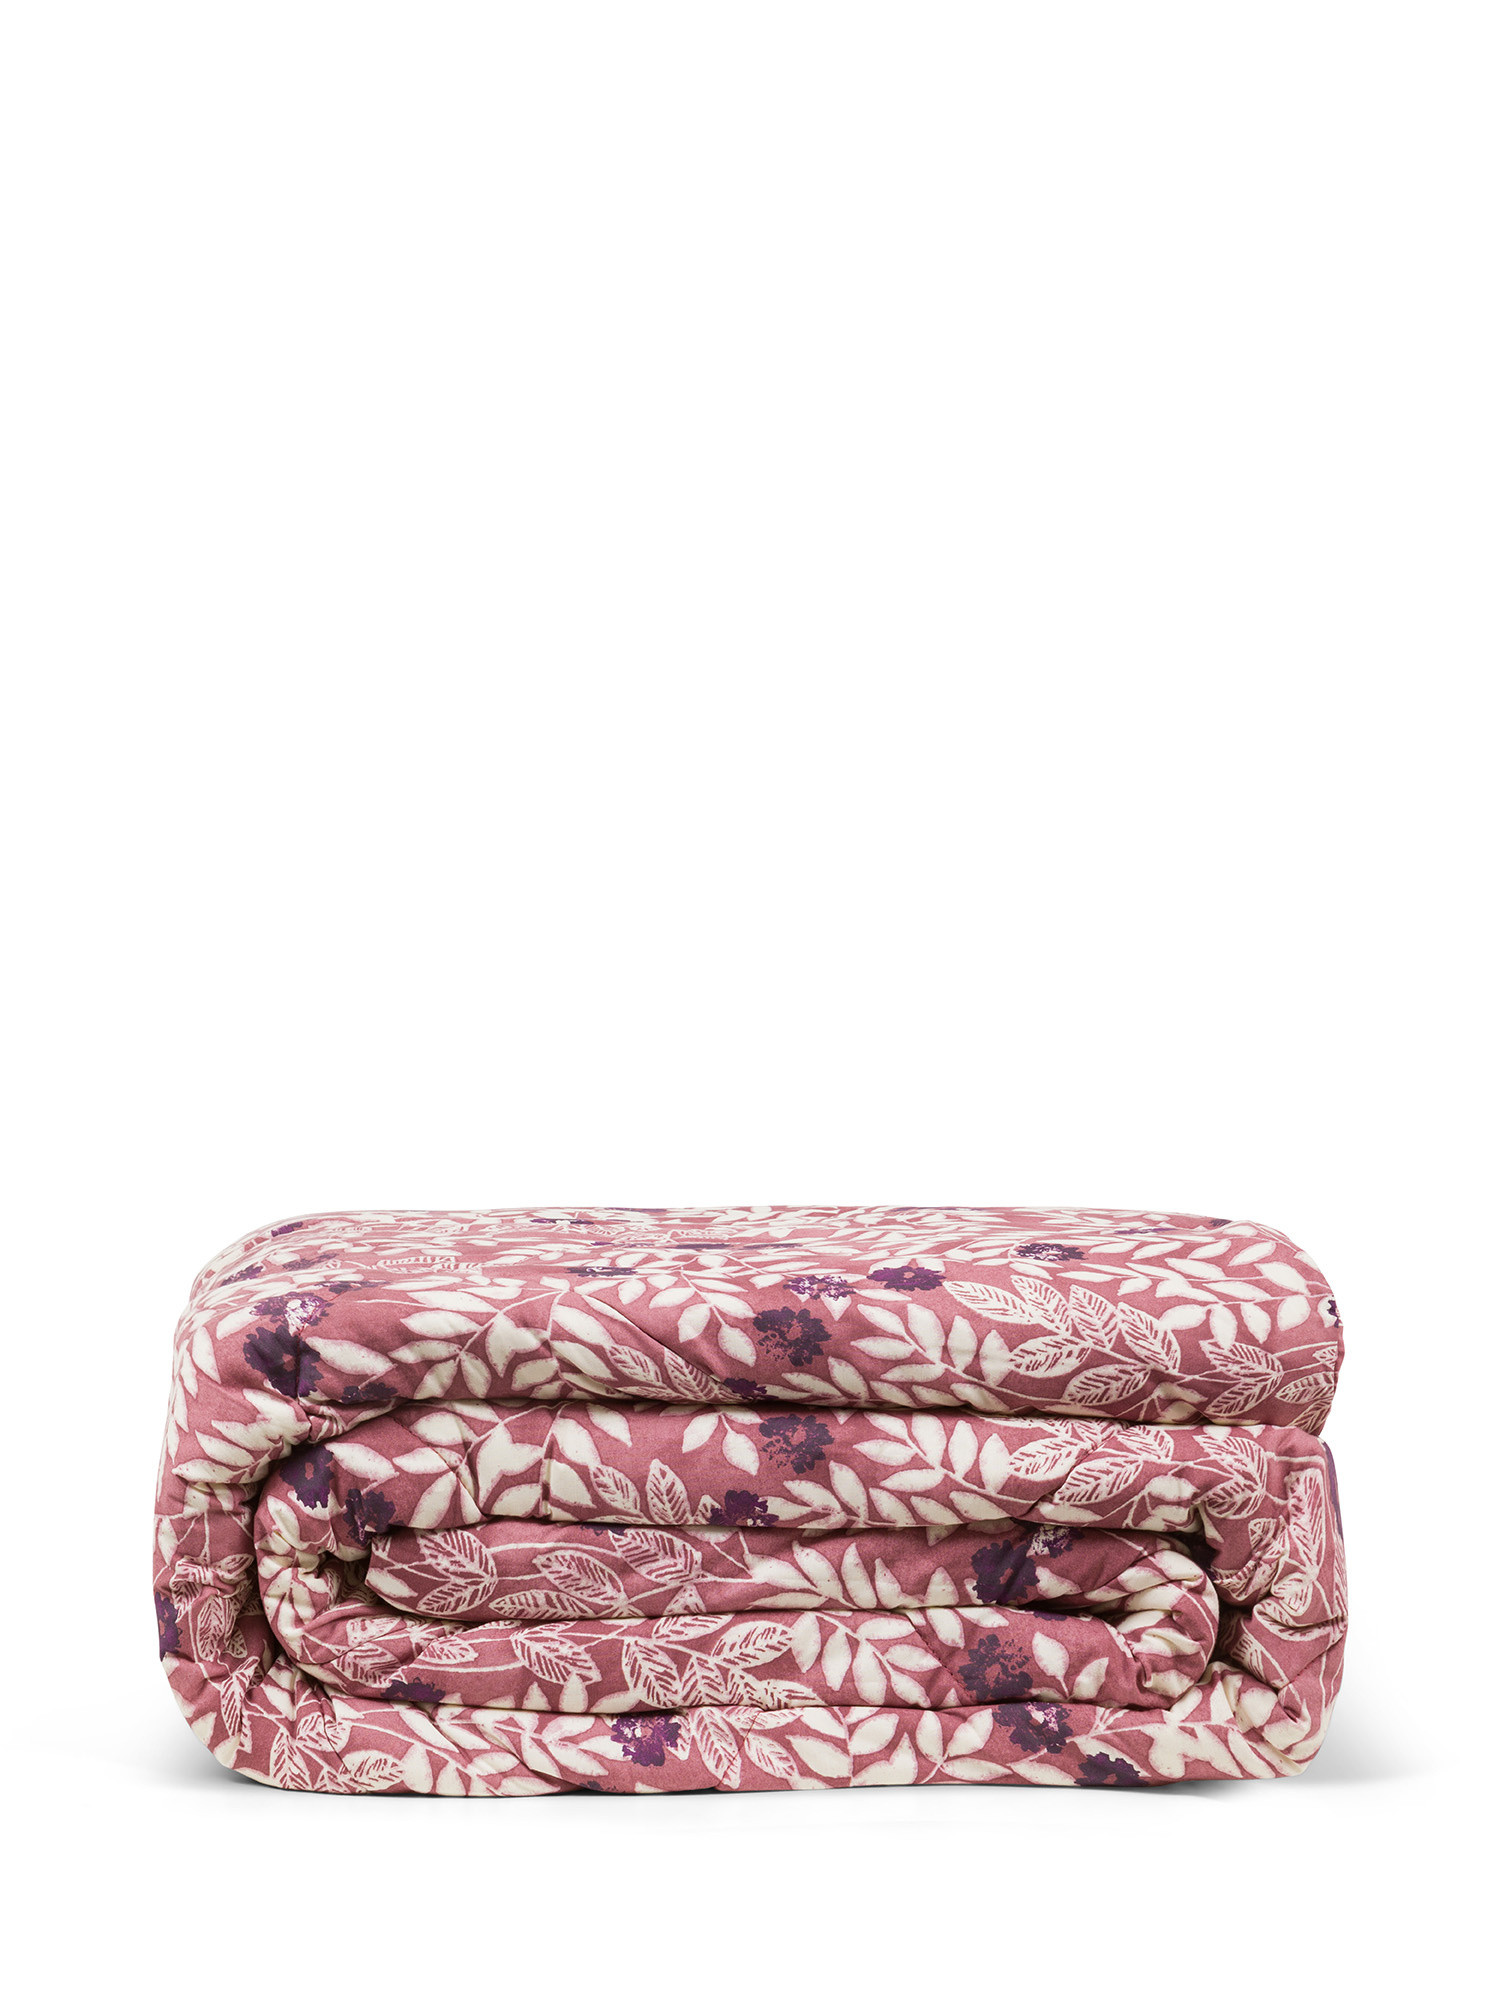 Хлопковое одеяло с цветочным узором Coincasa, розовый супермягкое фланелевое покрывало с узором в виде лап радуги легкий плед для кровати дивана двуспальной кровати всесезонный одеяло для де